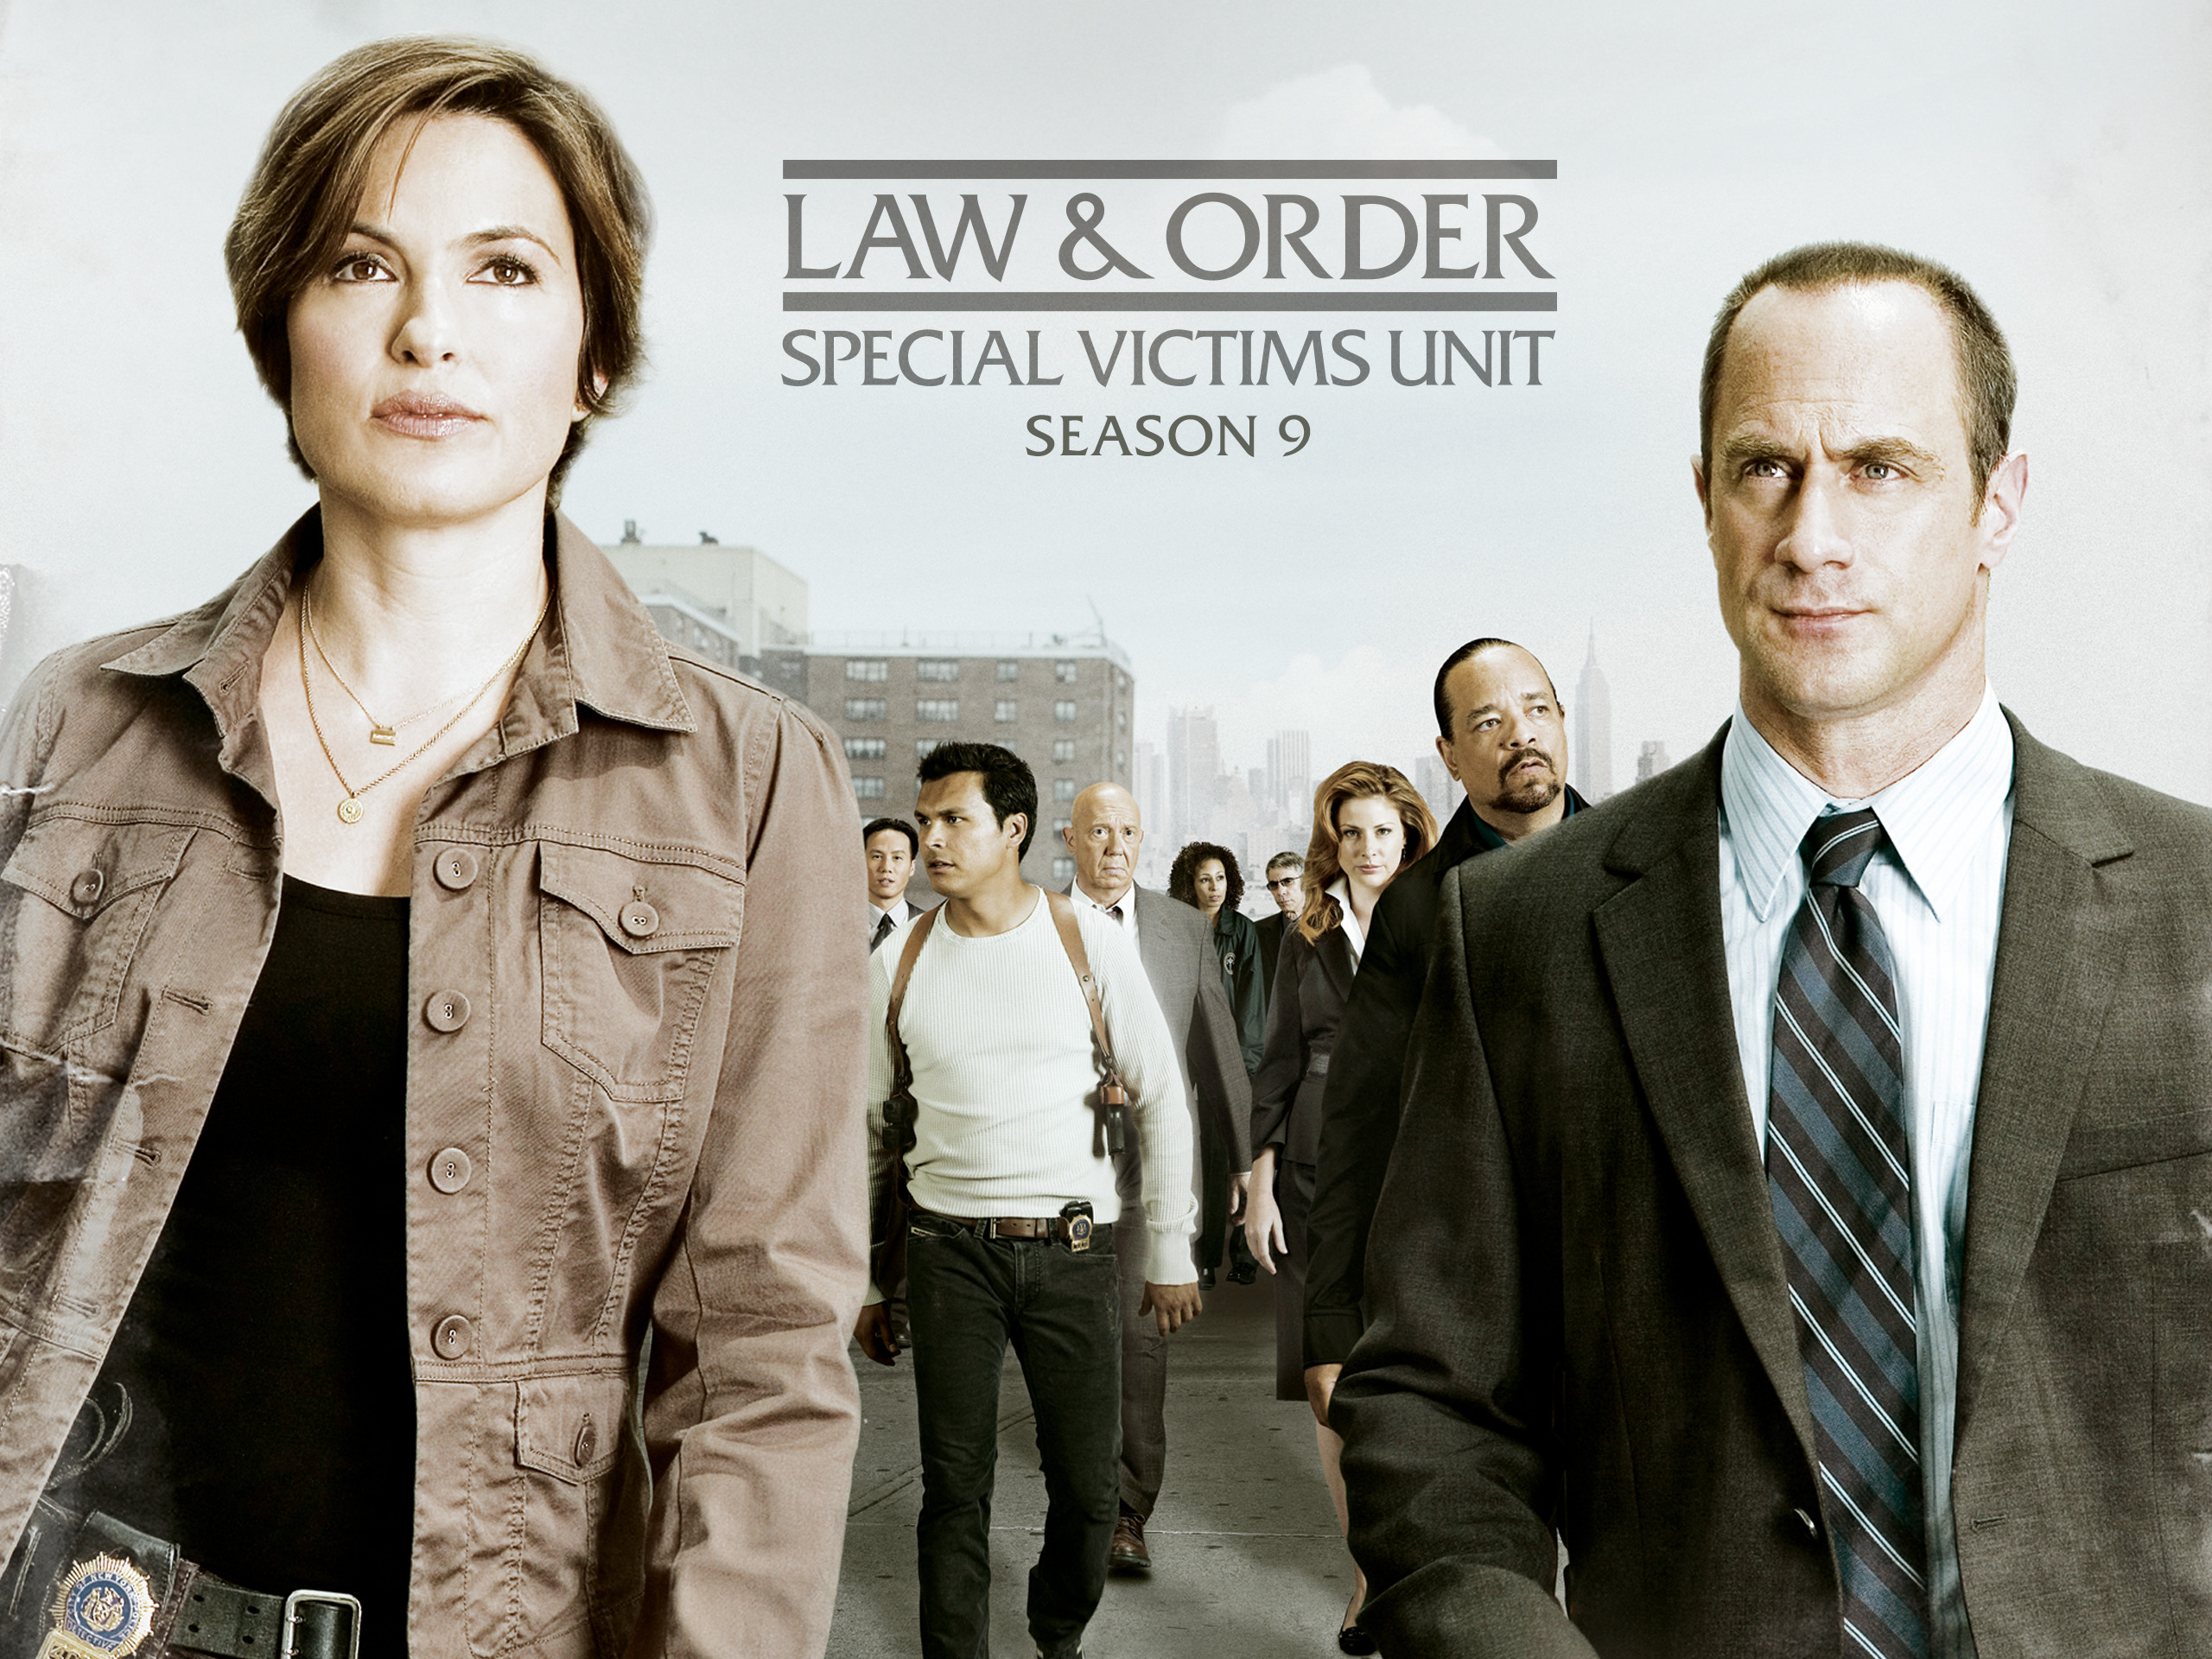 Luật Pháp Và Trật Tự: Nạn Nhân Đặc Biệt (Phần 9) - Law & Order: Special Victims Unit (Season 9)